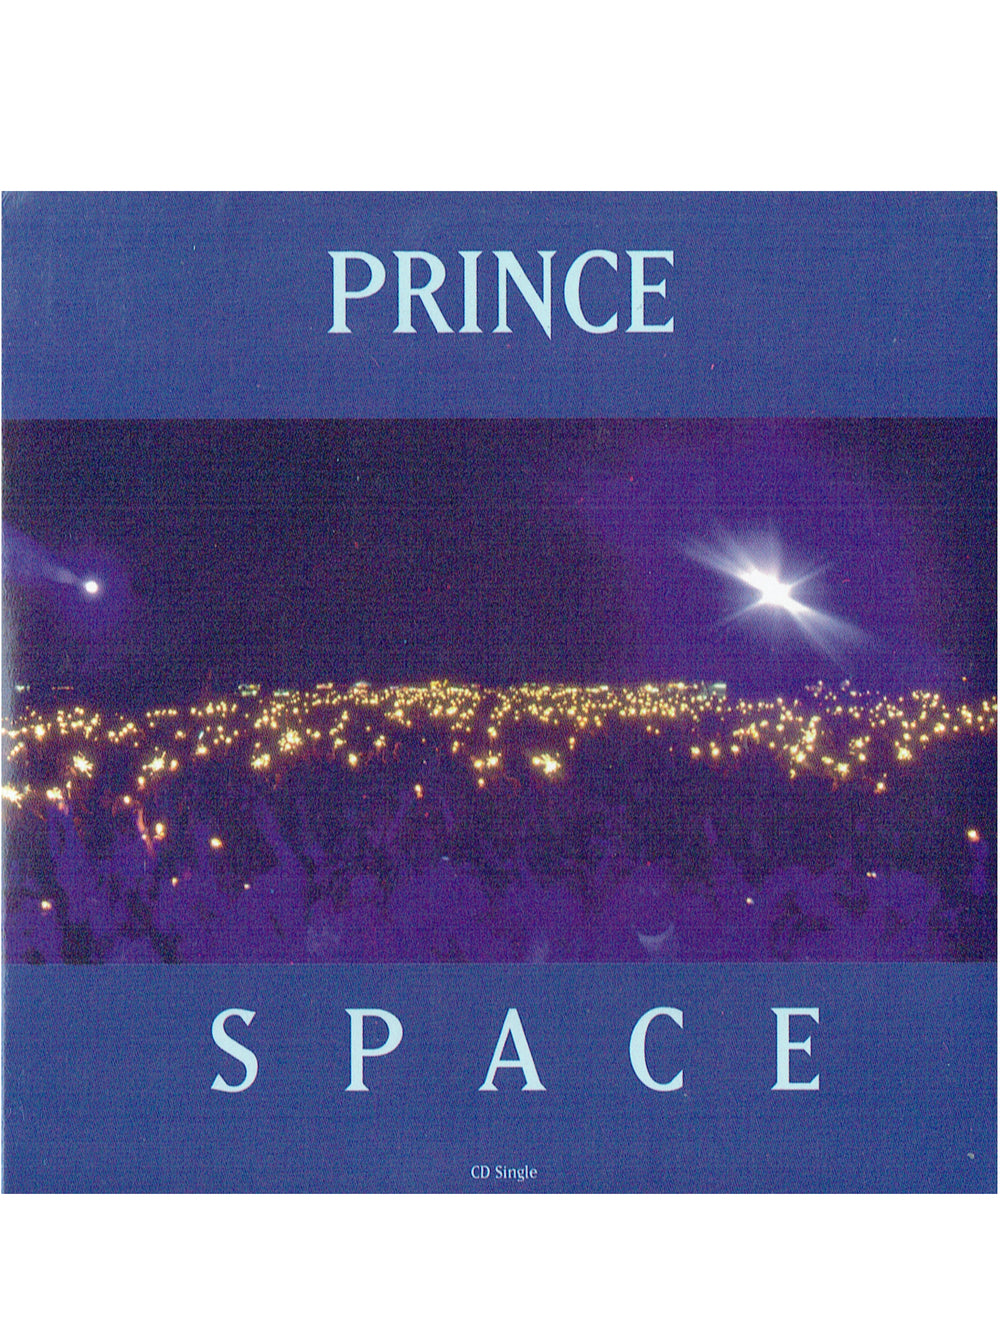 Prince – Space CD Single Slip Case US Preloved: 1994